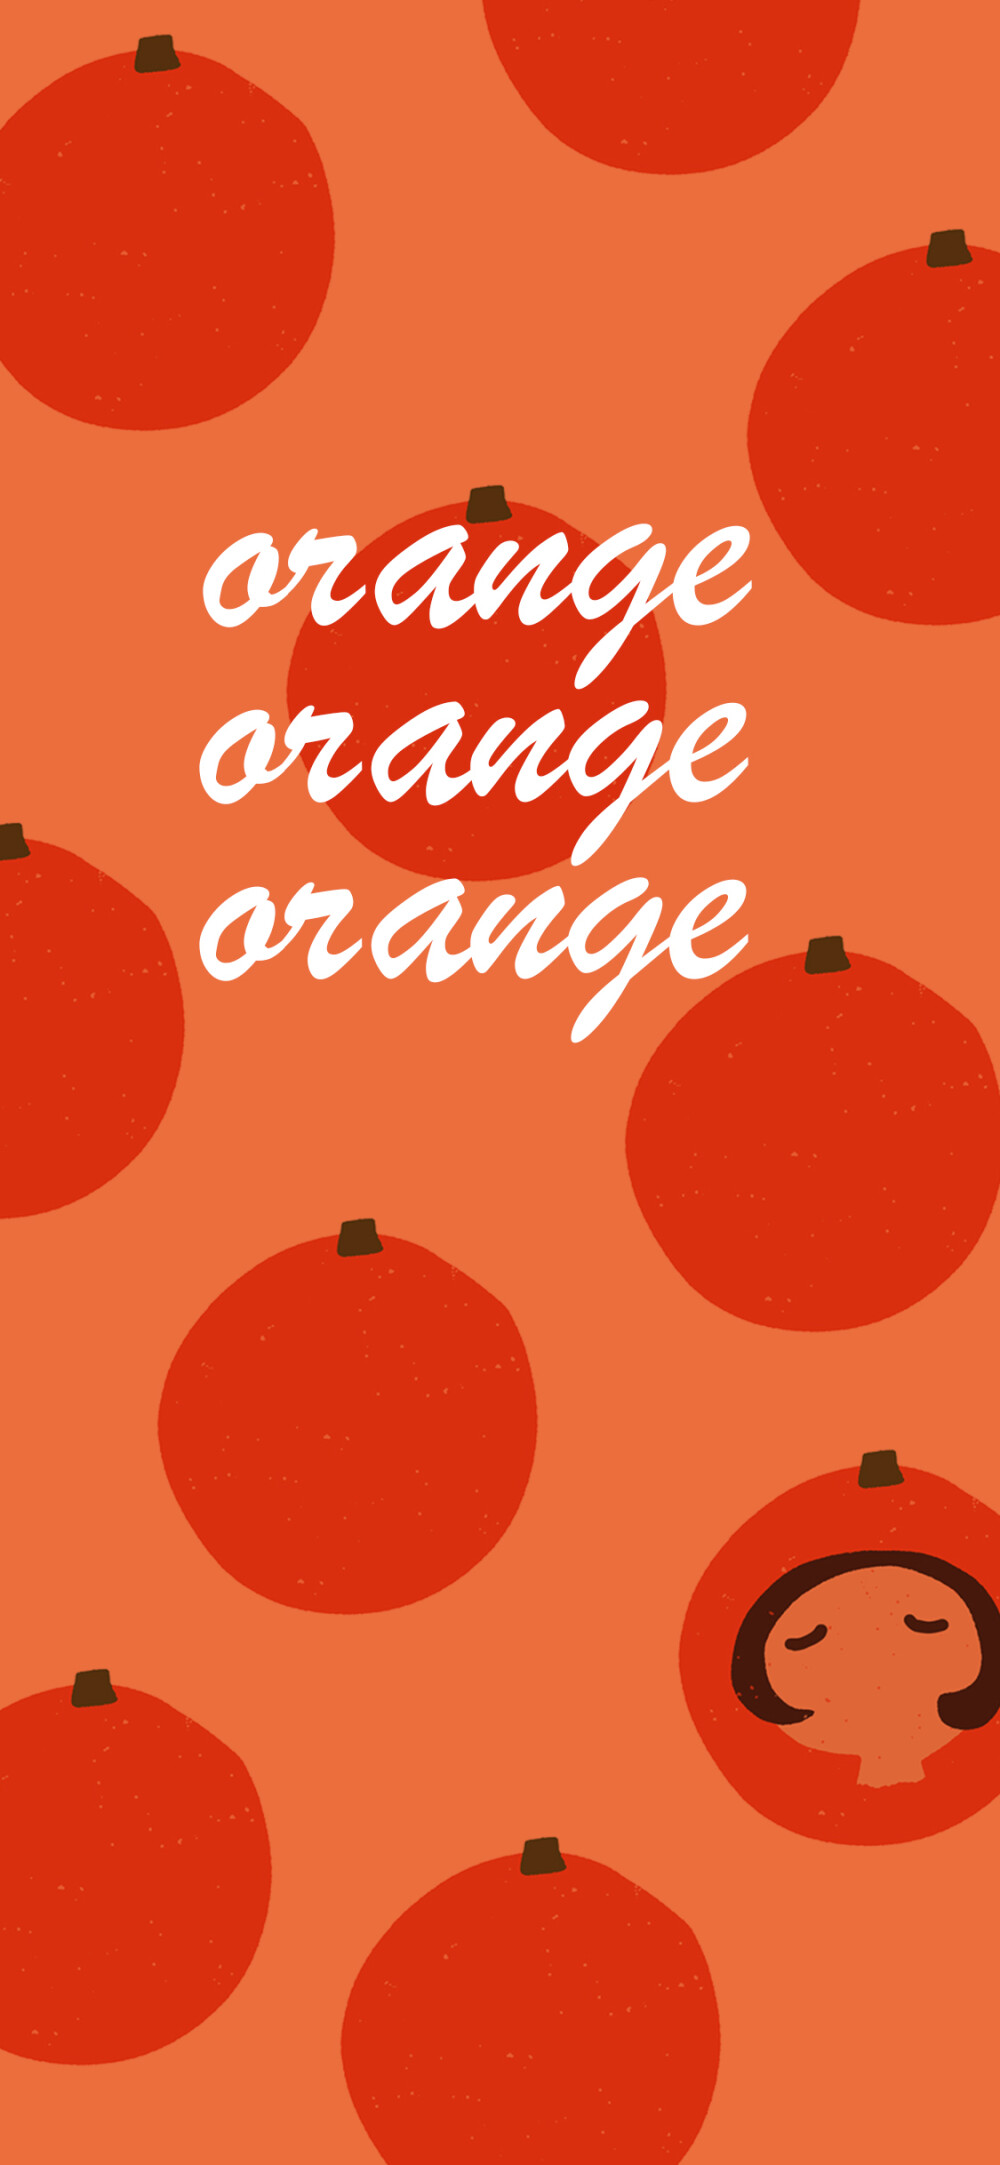 橙色壁纸锁屏图片